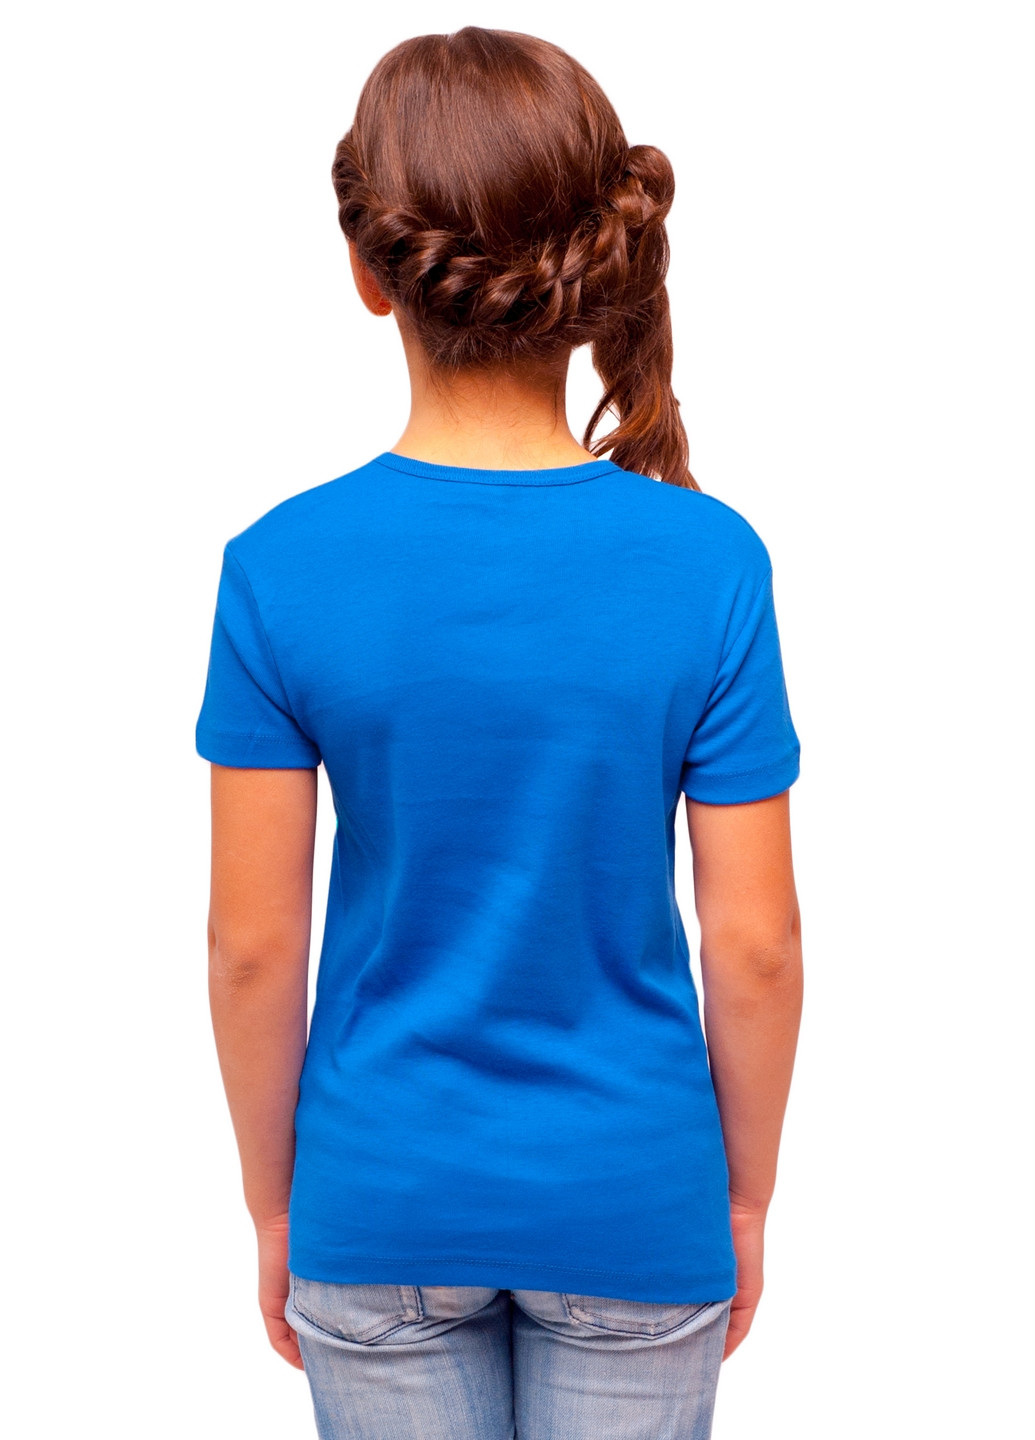 Синяя демисезонная футболка деская Наталюкс 21-3302